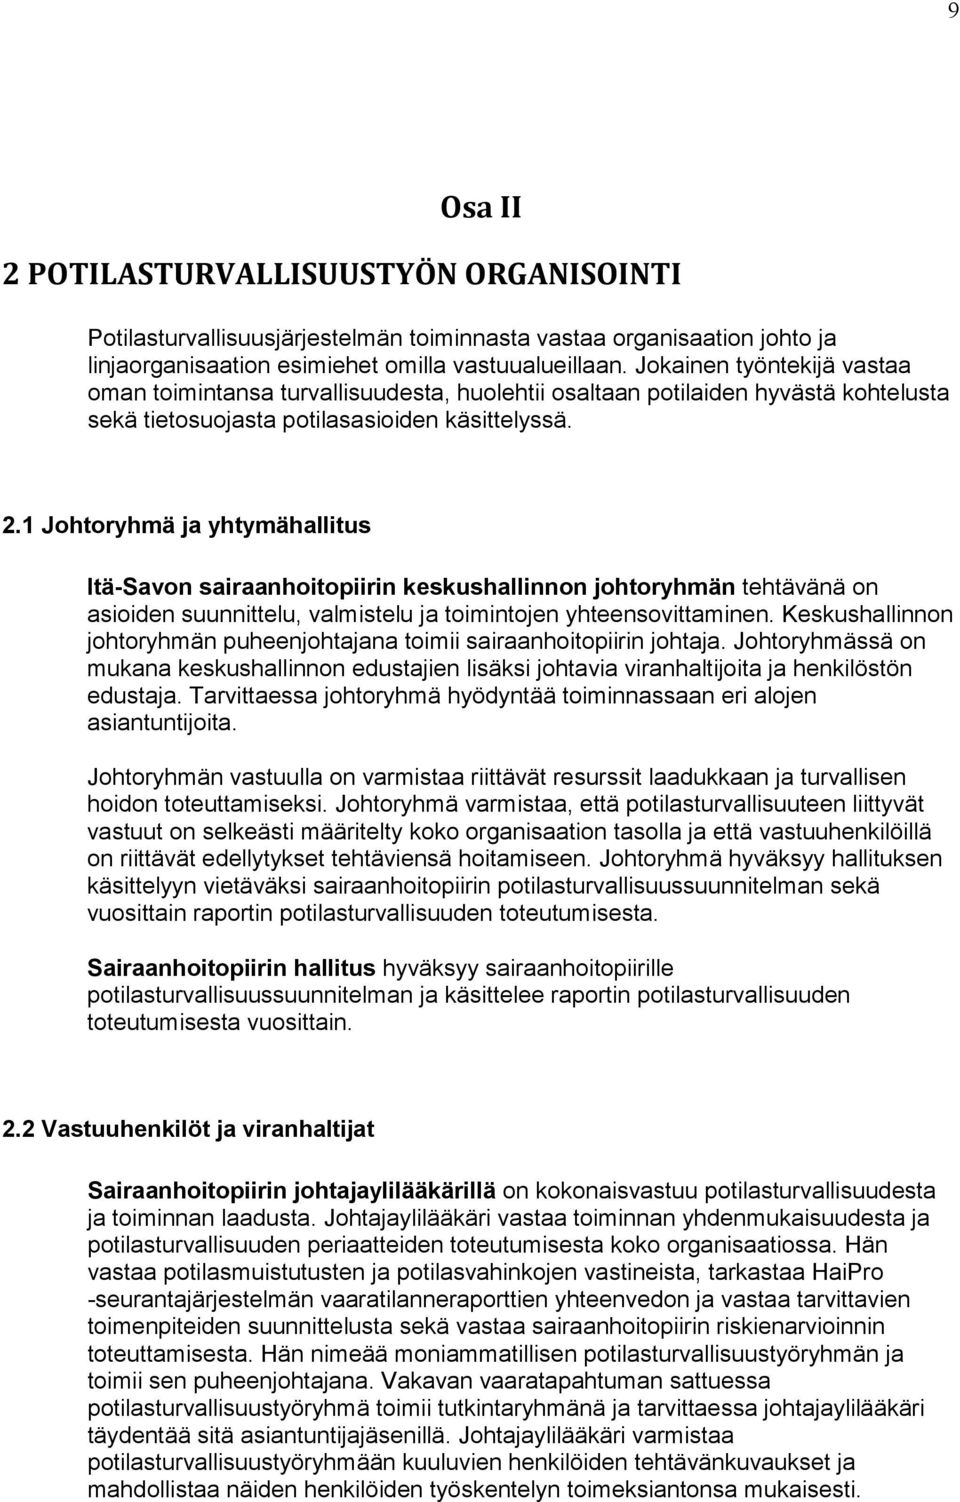 1 Johtoryhmä ja yhtymähallitus Itä-Savon sairaanhoitopiirin keskushallinnon johtoryhmän tehtävänä on asioiden suunnittelu, valmistelu ja toimintojen yhteensovittaminen.